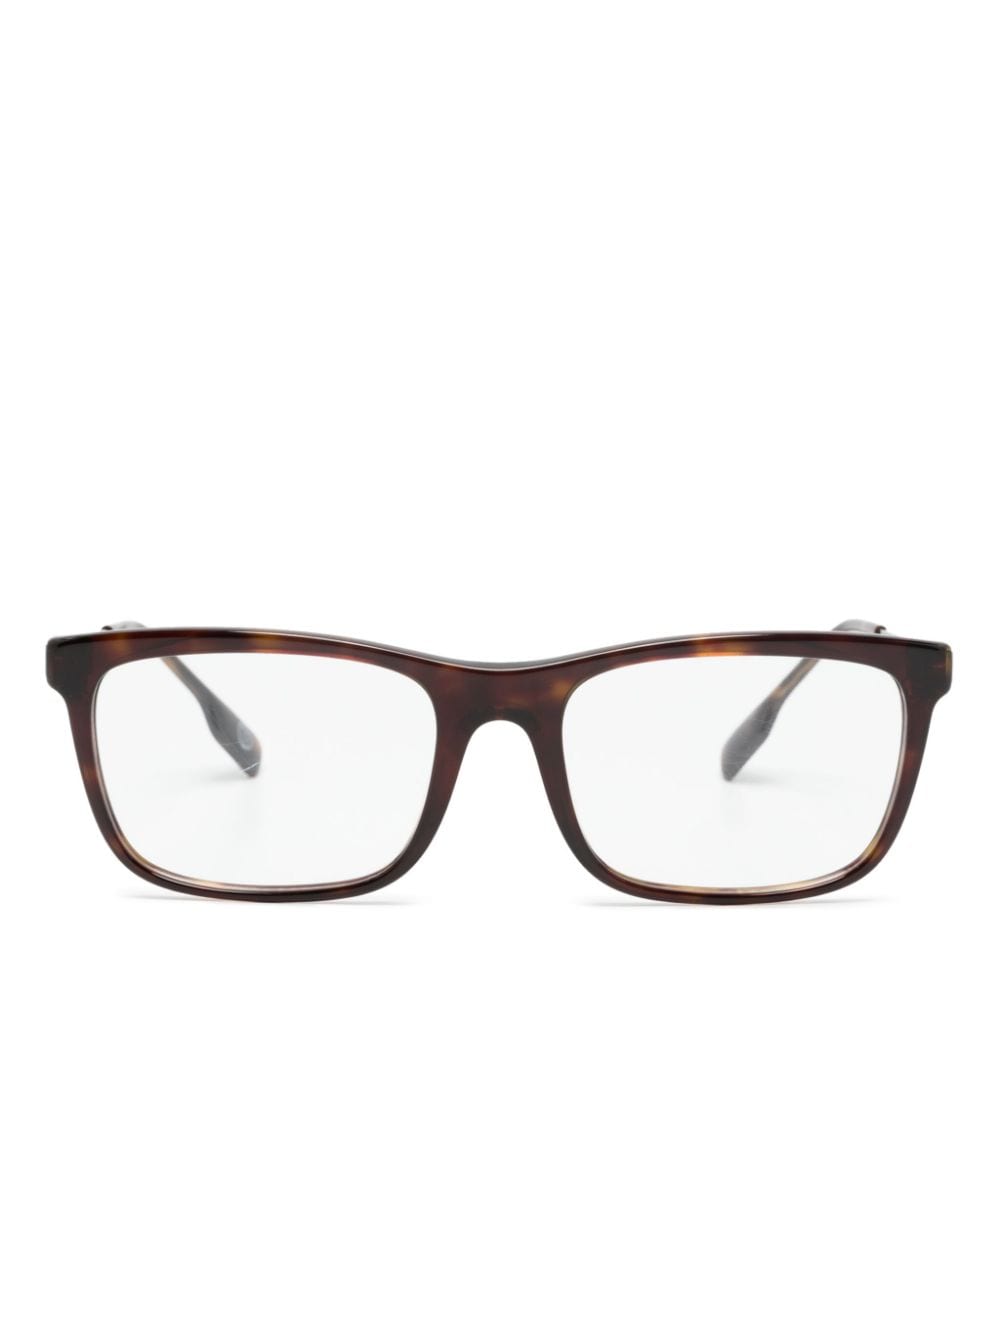 Burberry Eyewear Brille mit eckigem Gestell - Braun von Burberry Eyewear